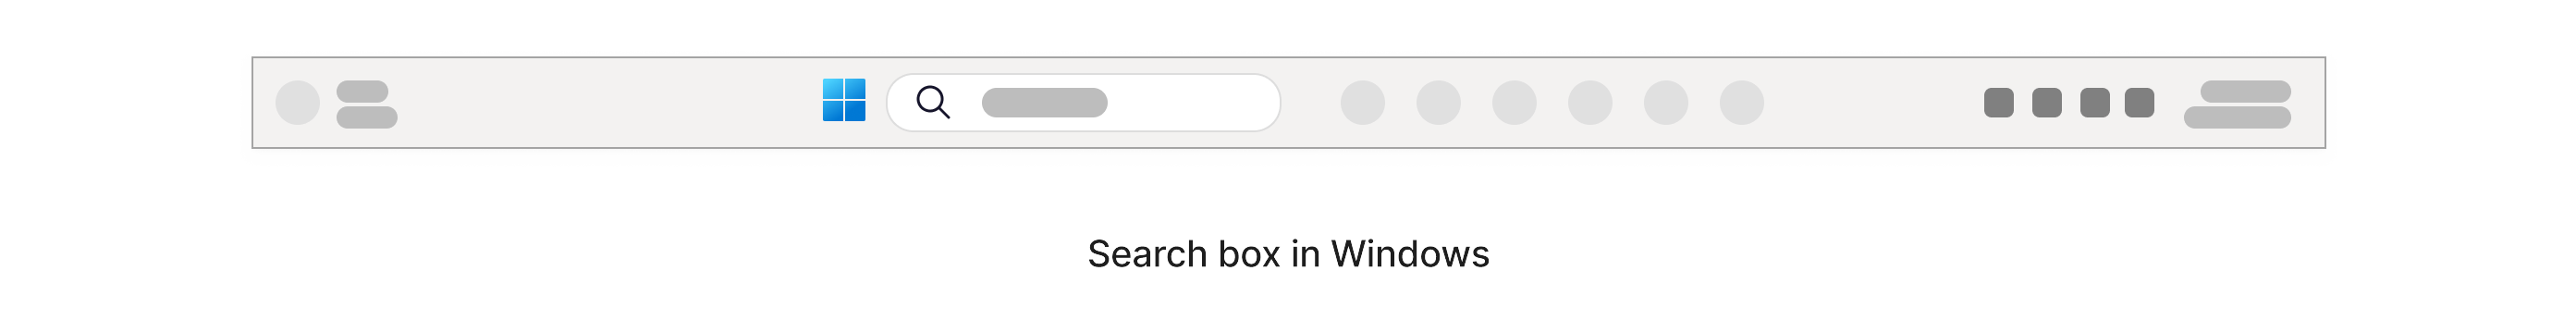 画面の下部にある Windows タスク バー内に拡大アイコン アイコンが表示された検索ボックス。